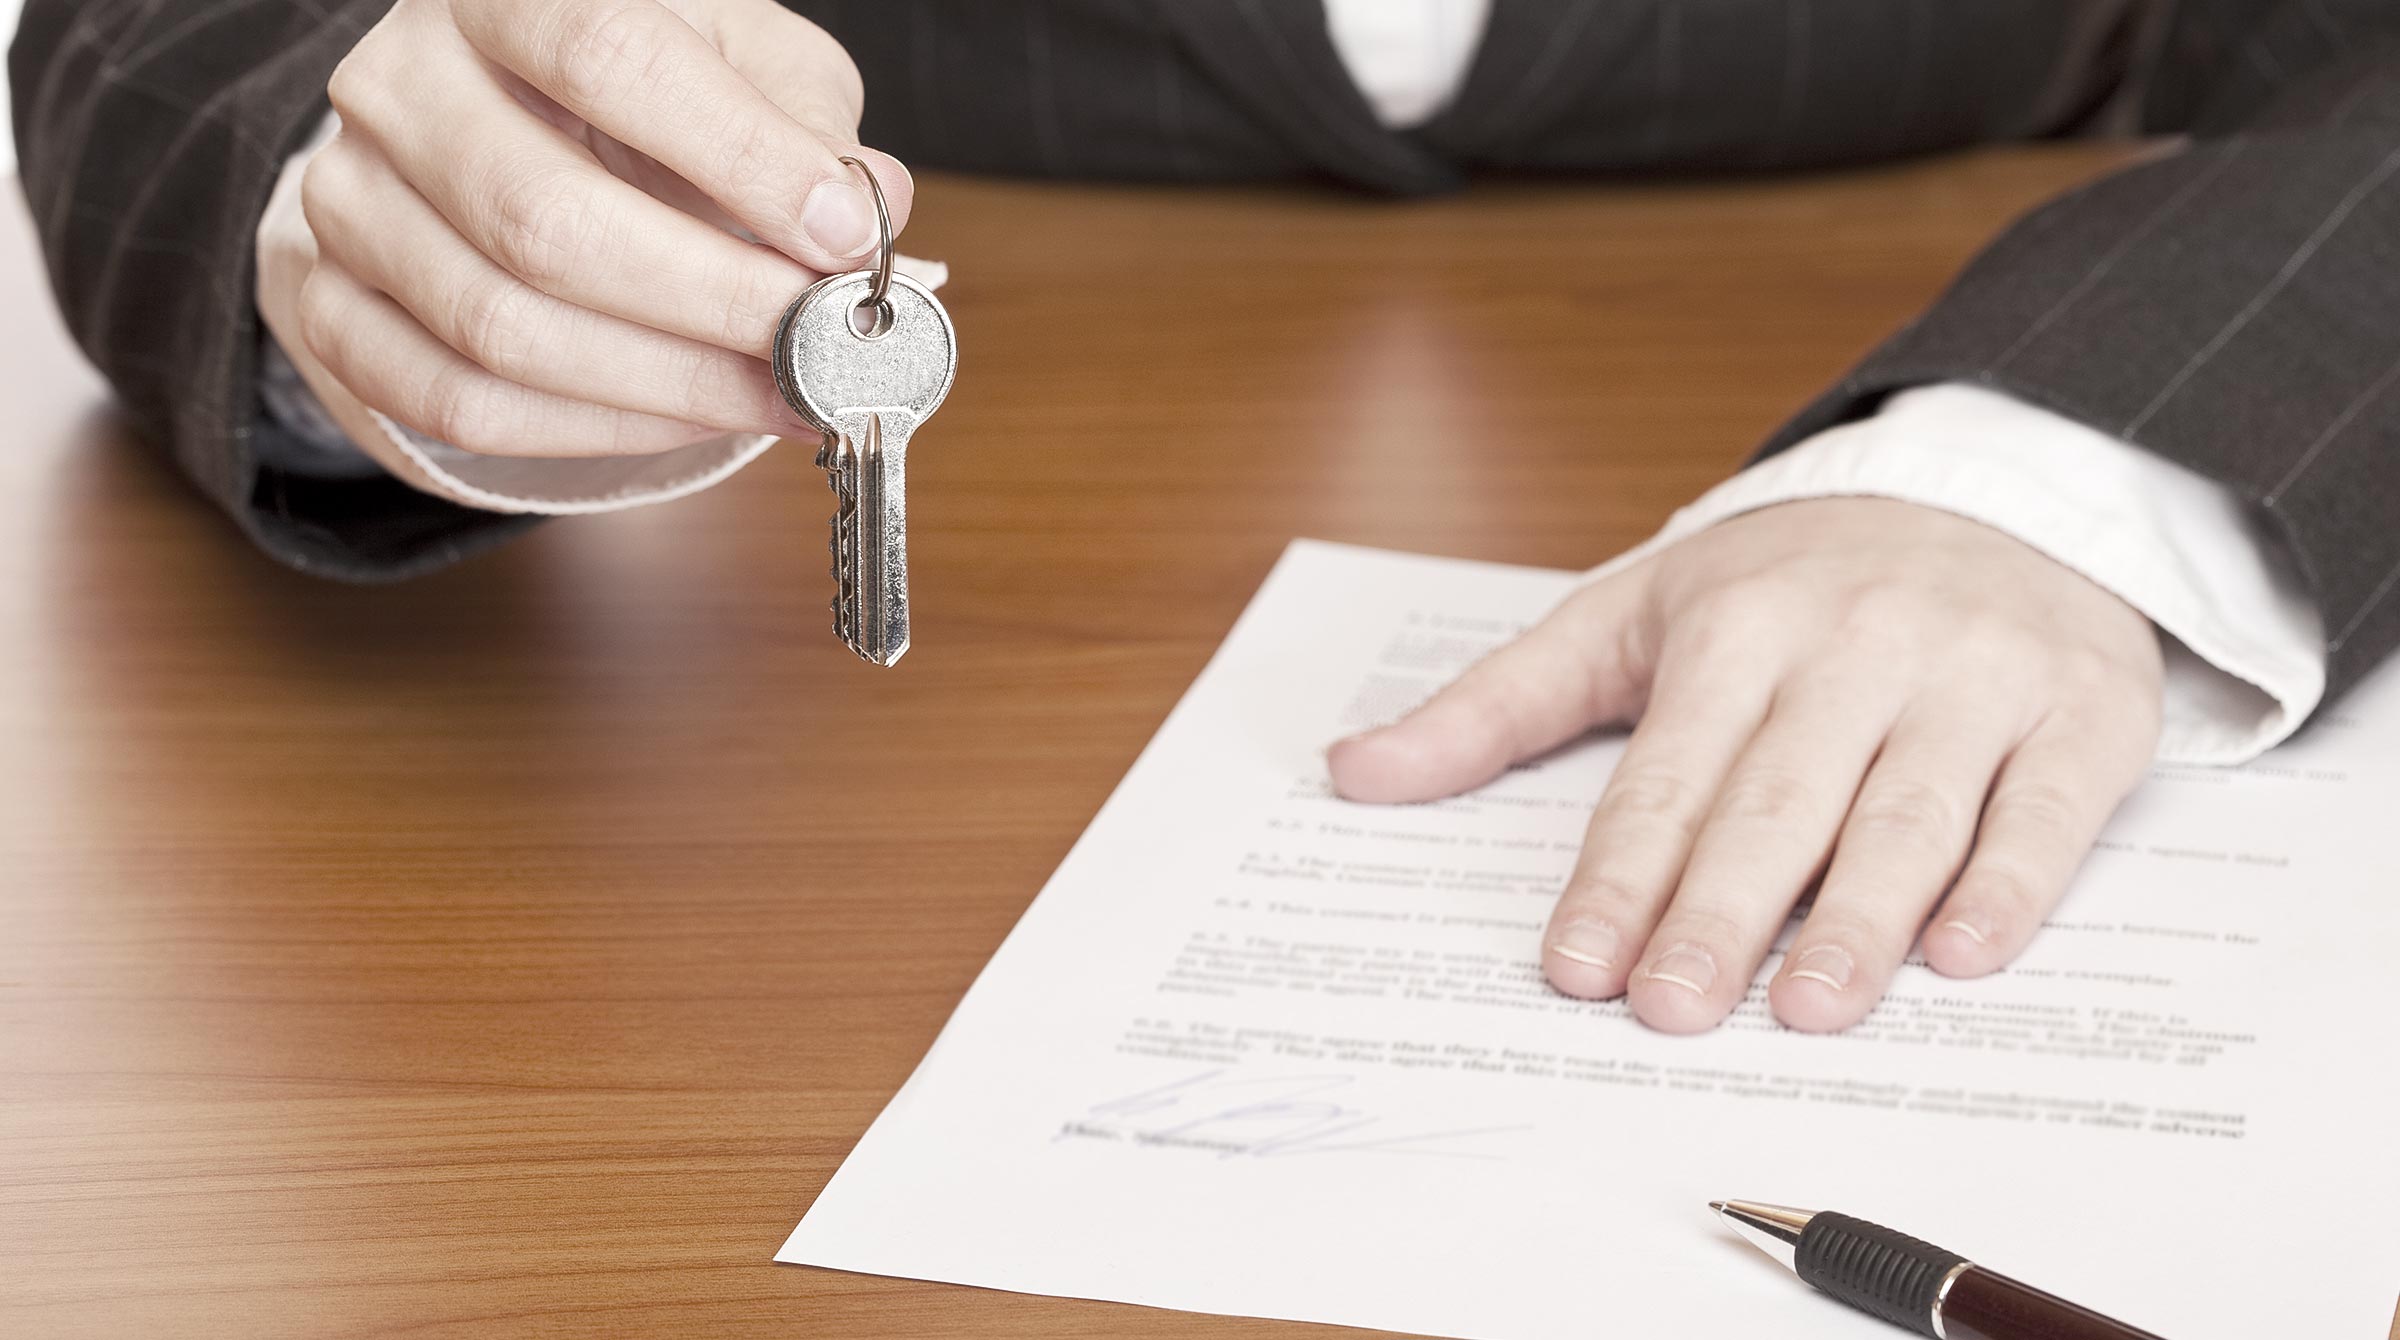 Der Schlüssel für die gekaufte Immobilie wird zusammen mit dem Kaufvertrag übergeben.